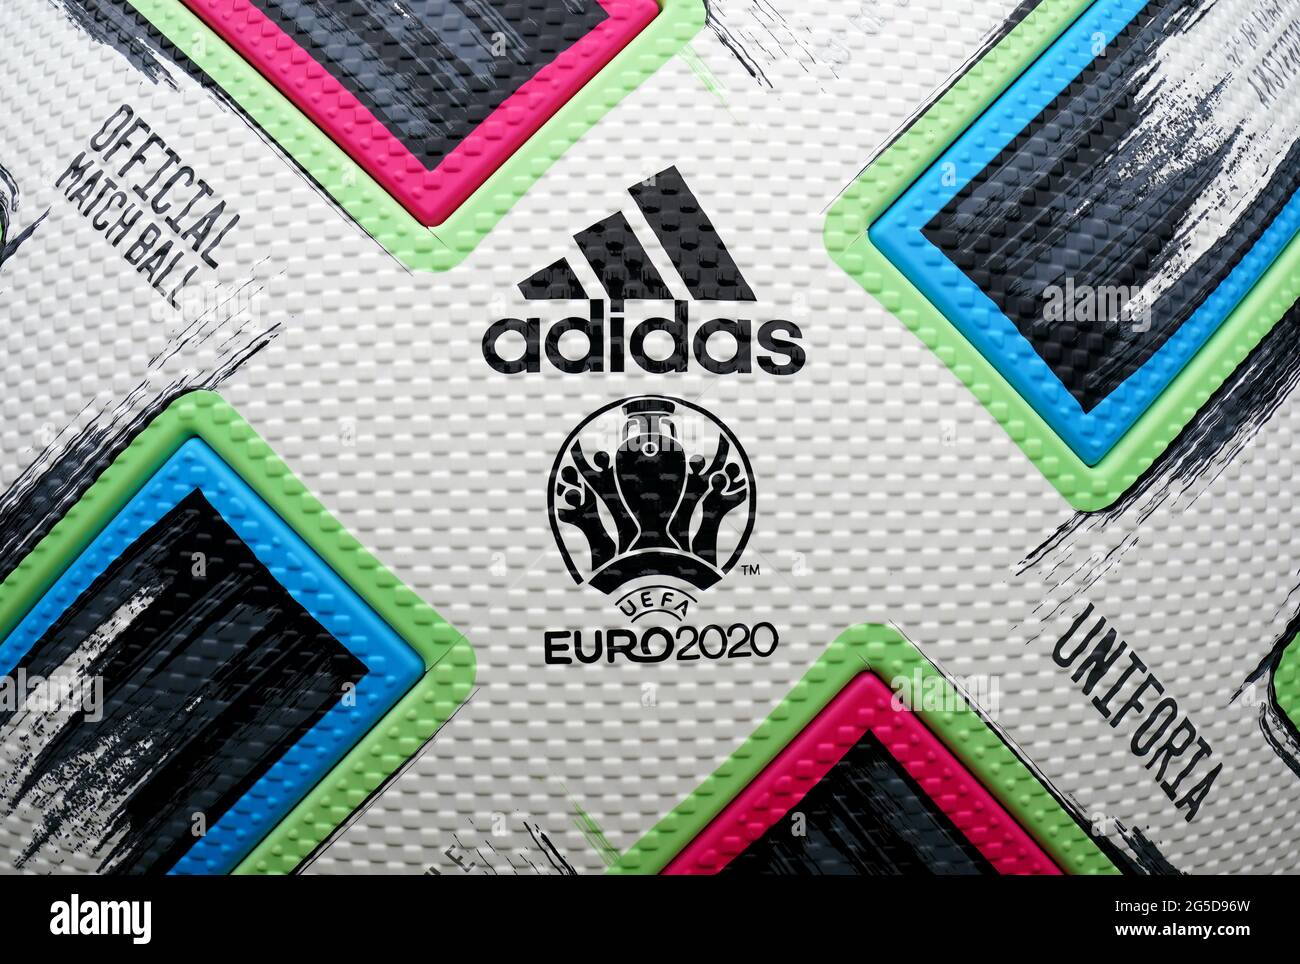 Eine Nahaufnahme eines riesigen Adidas-Spielballs in der Fan-Zone des Potter's Field in London vor der UEFA Euro 2020-Runde des Spiels von 16 zwischen Italien und Österreich. Bilddatum: Samstag, 26. Juni 2021. Stockfoto